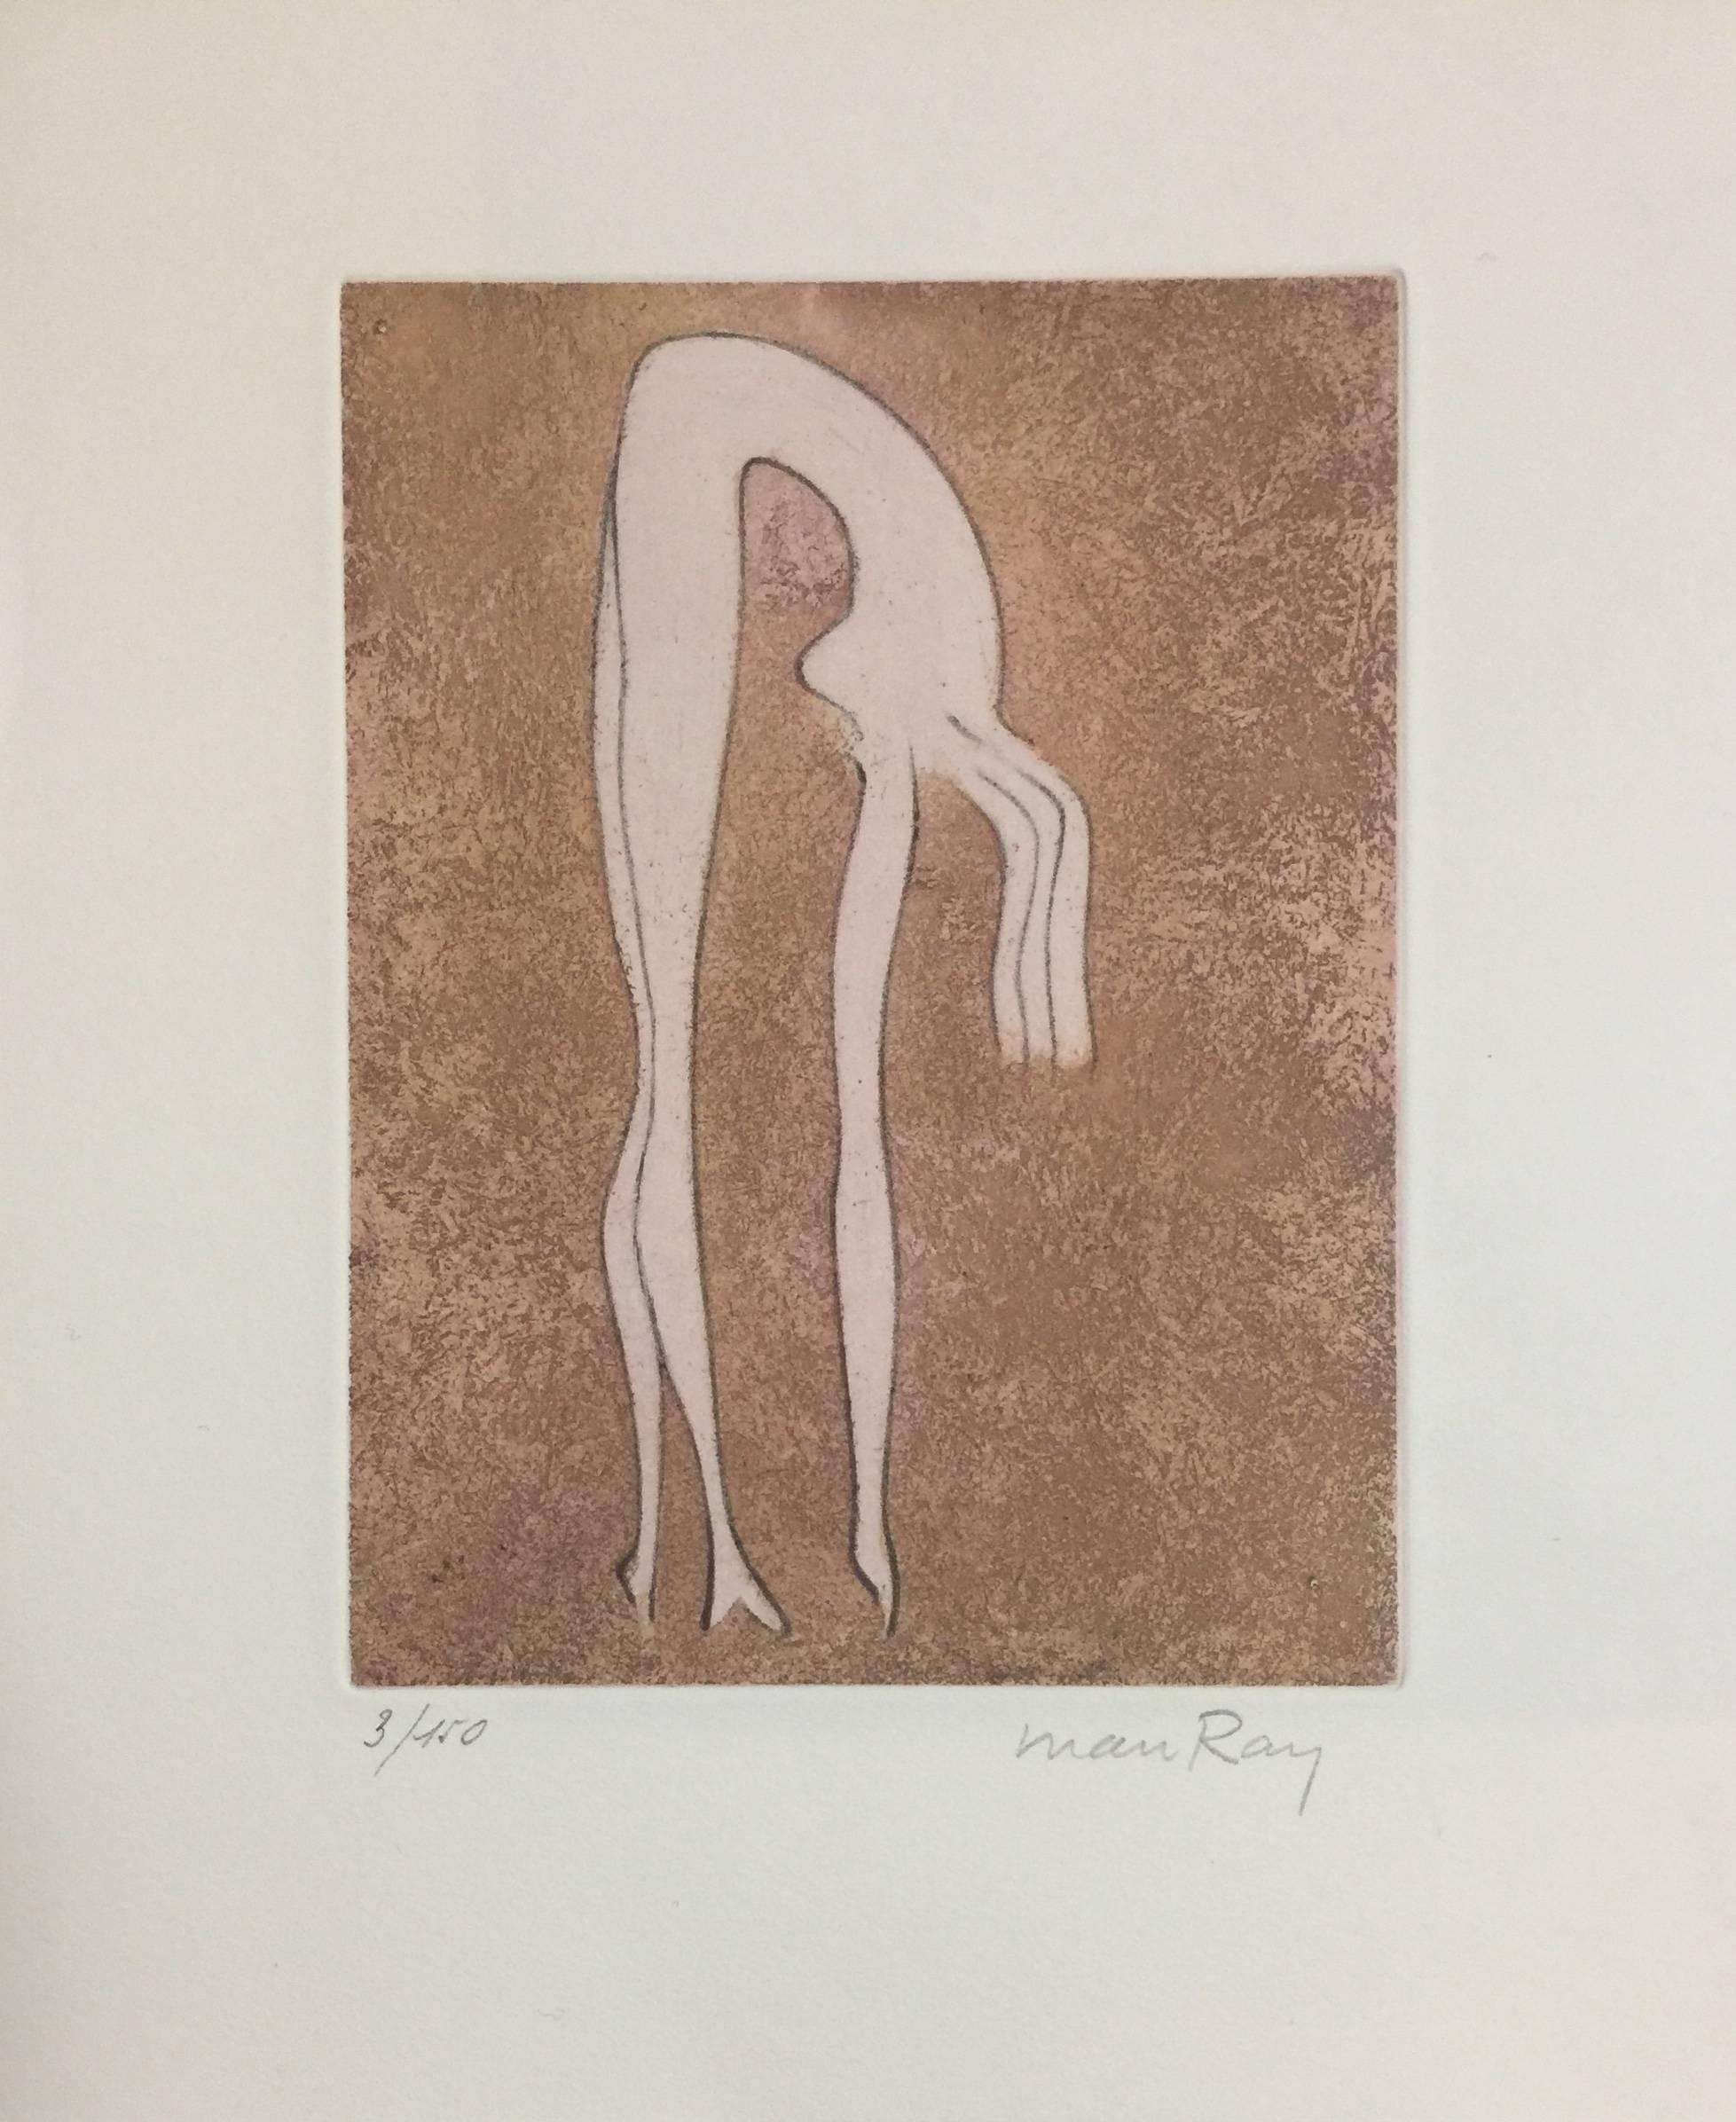 Man Ray Abstract Print - Nu